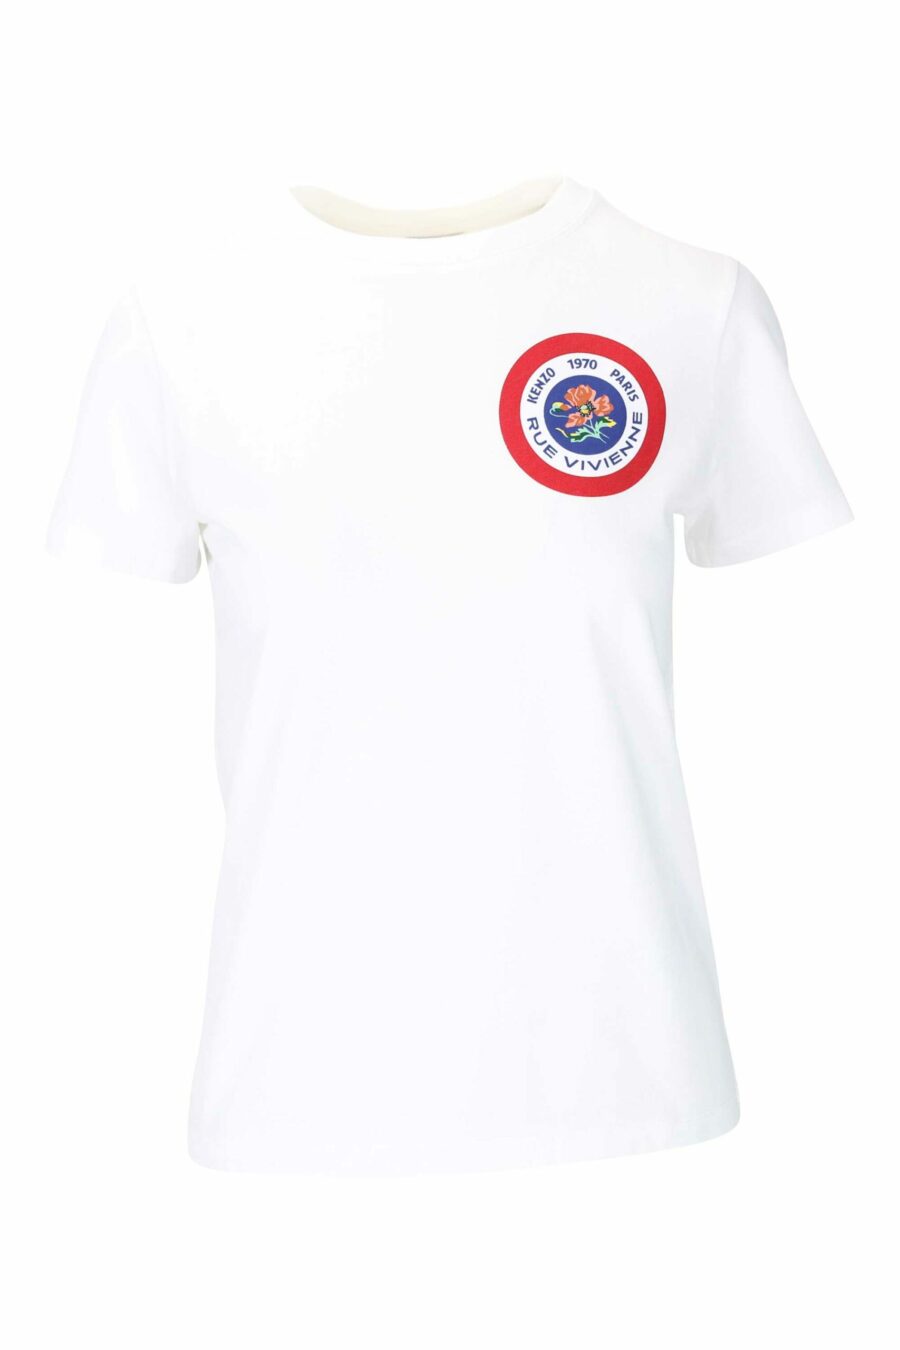 Weißes T-Shirt mit rundem Mini-Logo und Grafik auf dem Rücken - 3612230517936 1 skaliert